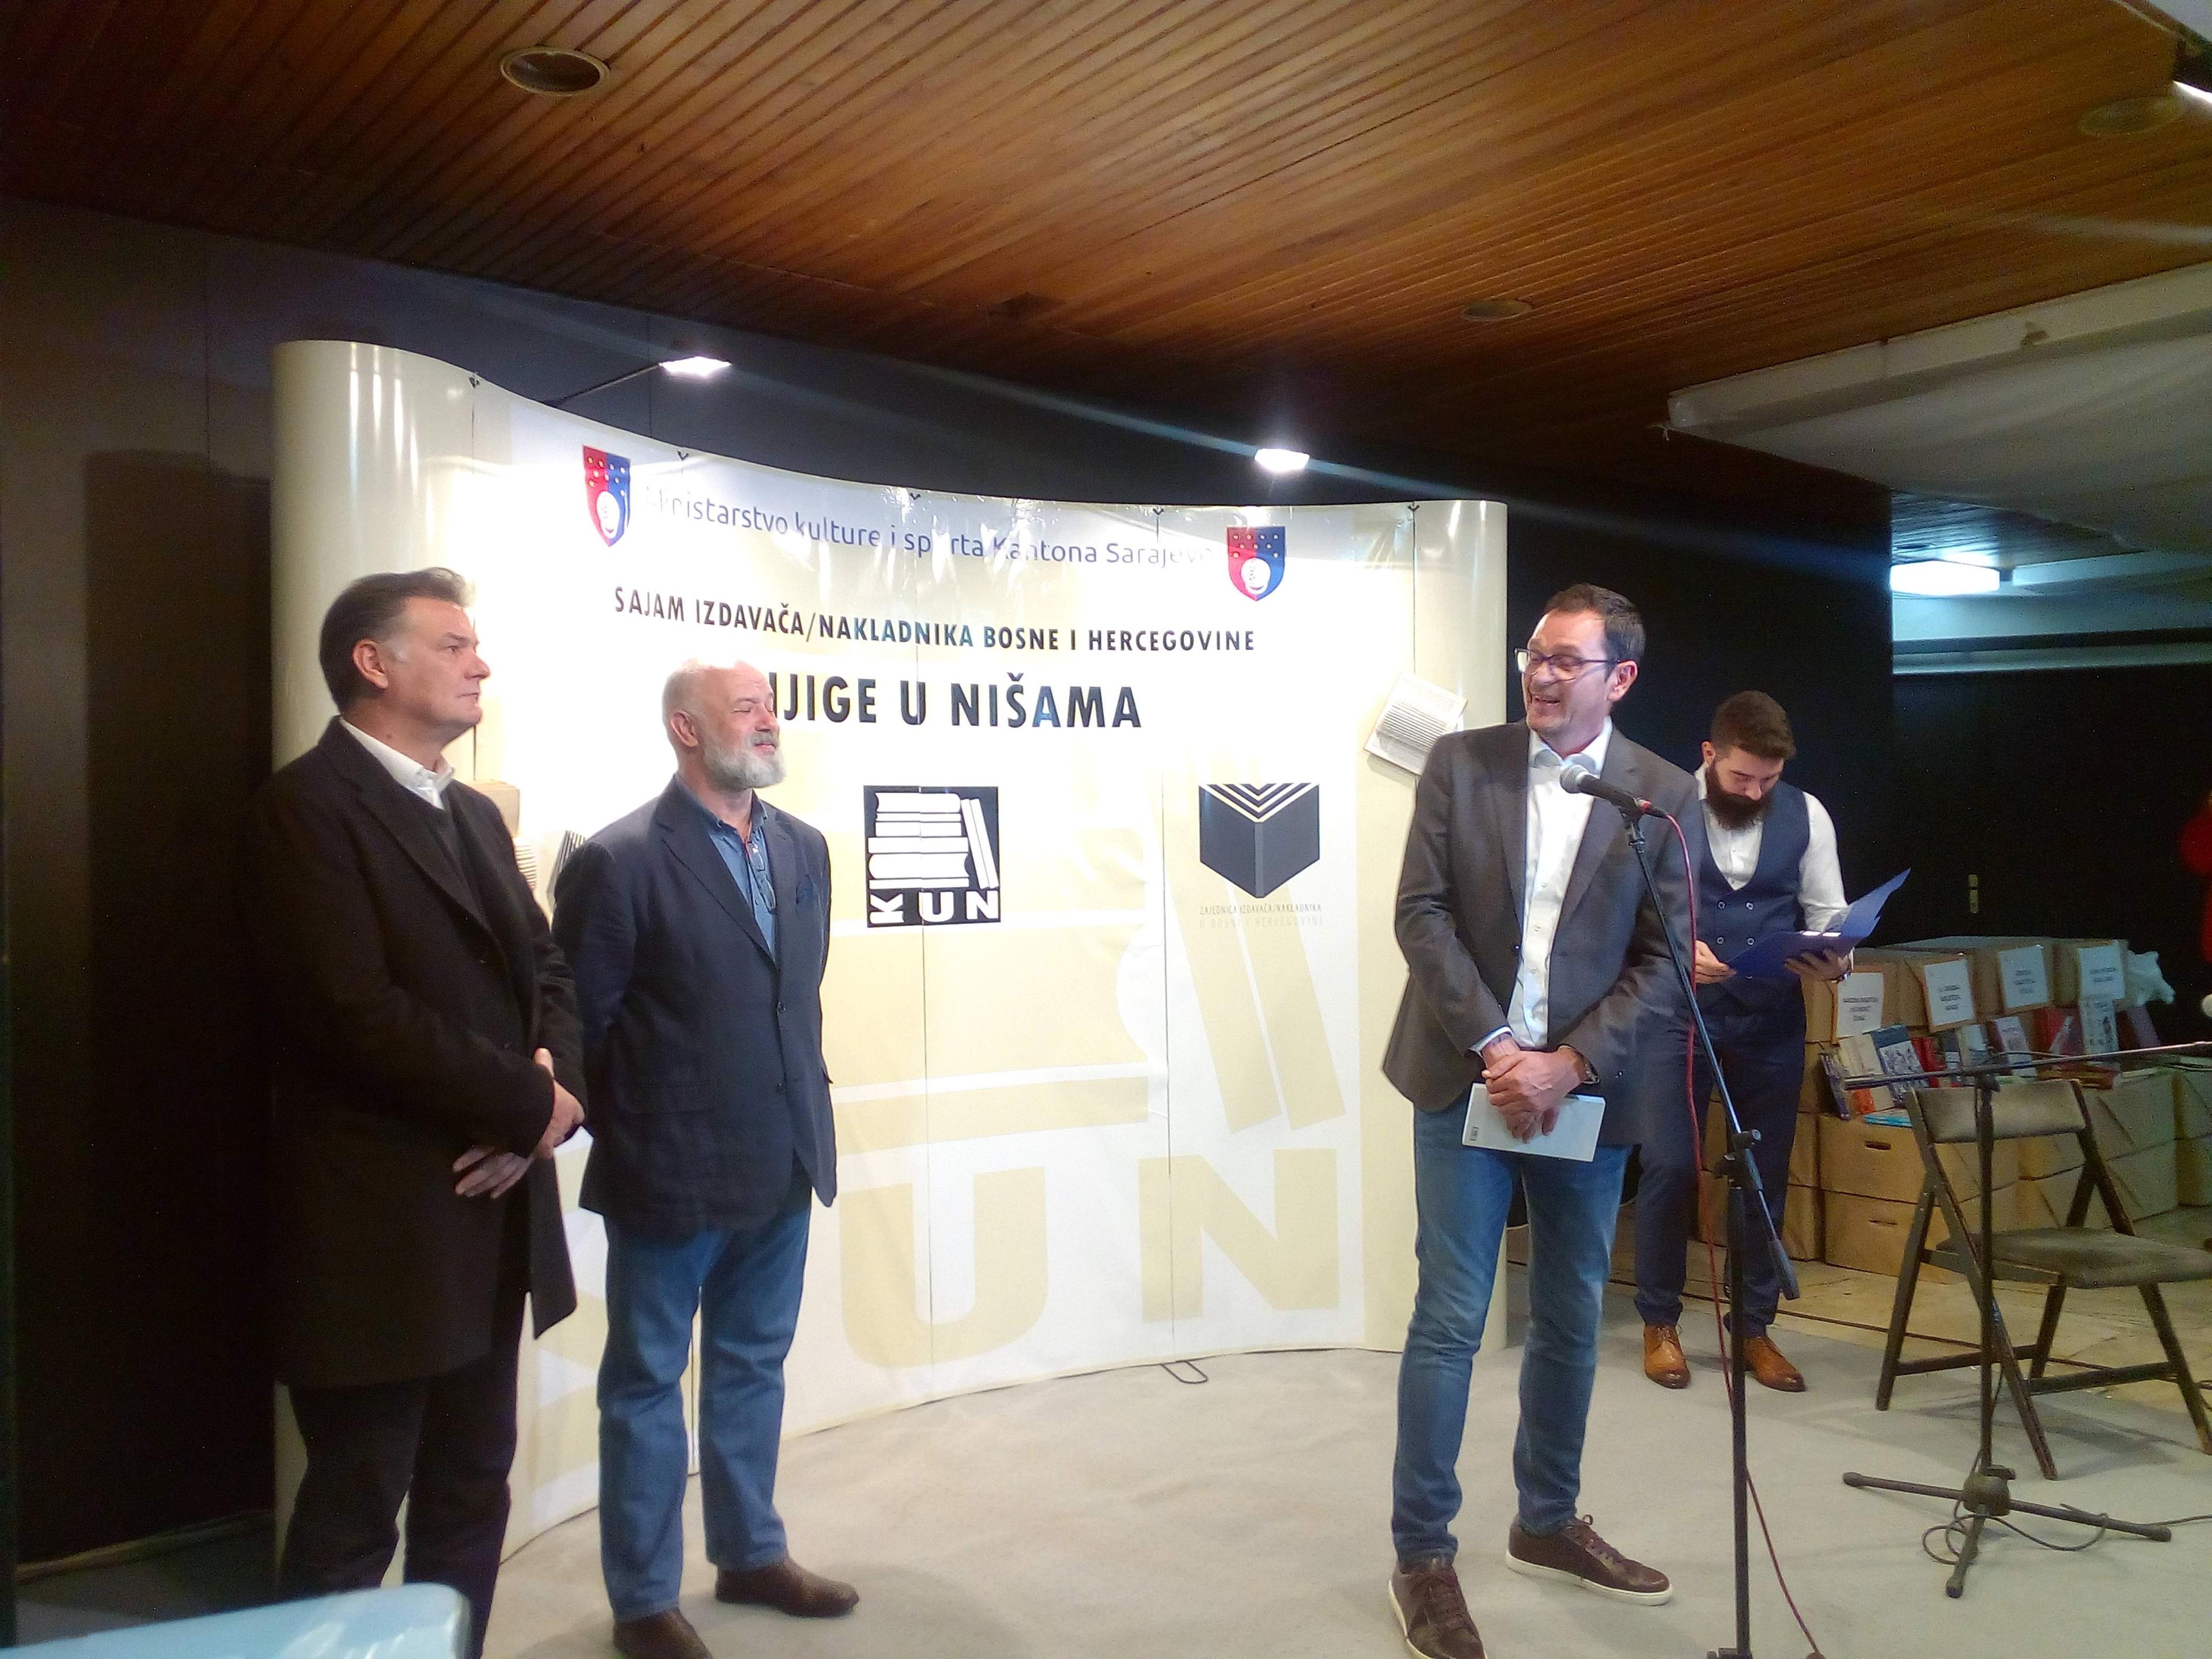 U Sarajevu otvoren prvi Sajam izdavača "Knjige u nišama" : Vratiti dignitet domaćim izdavačima